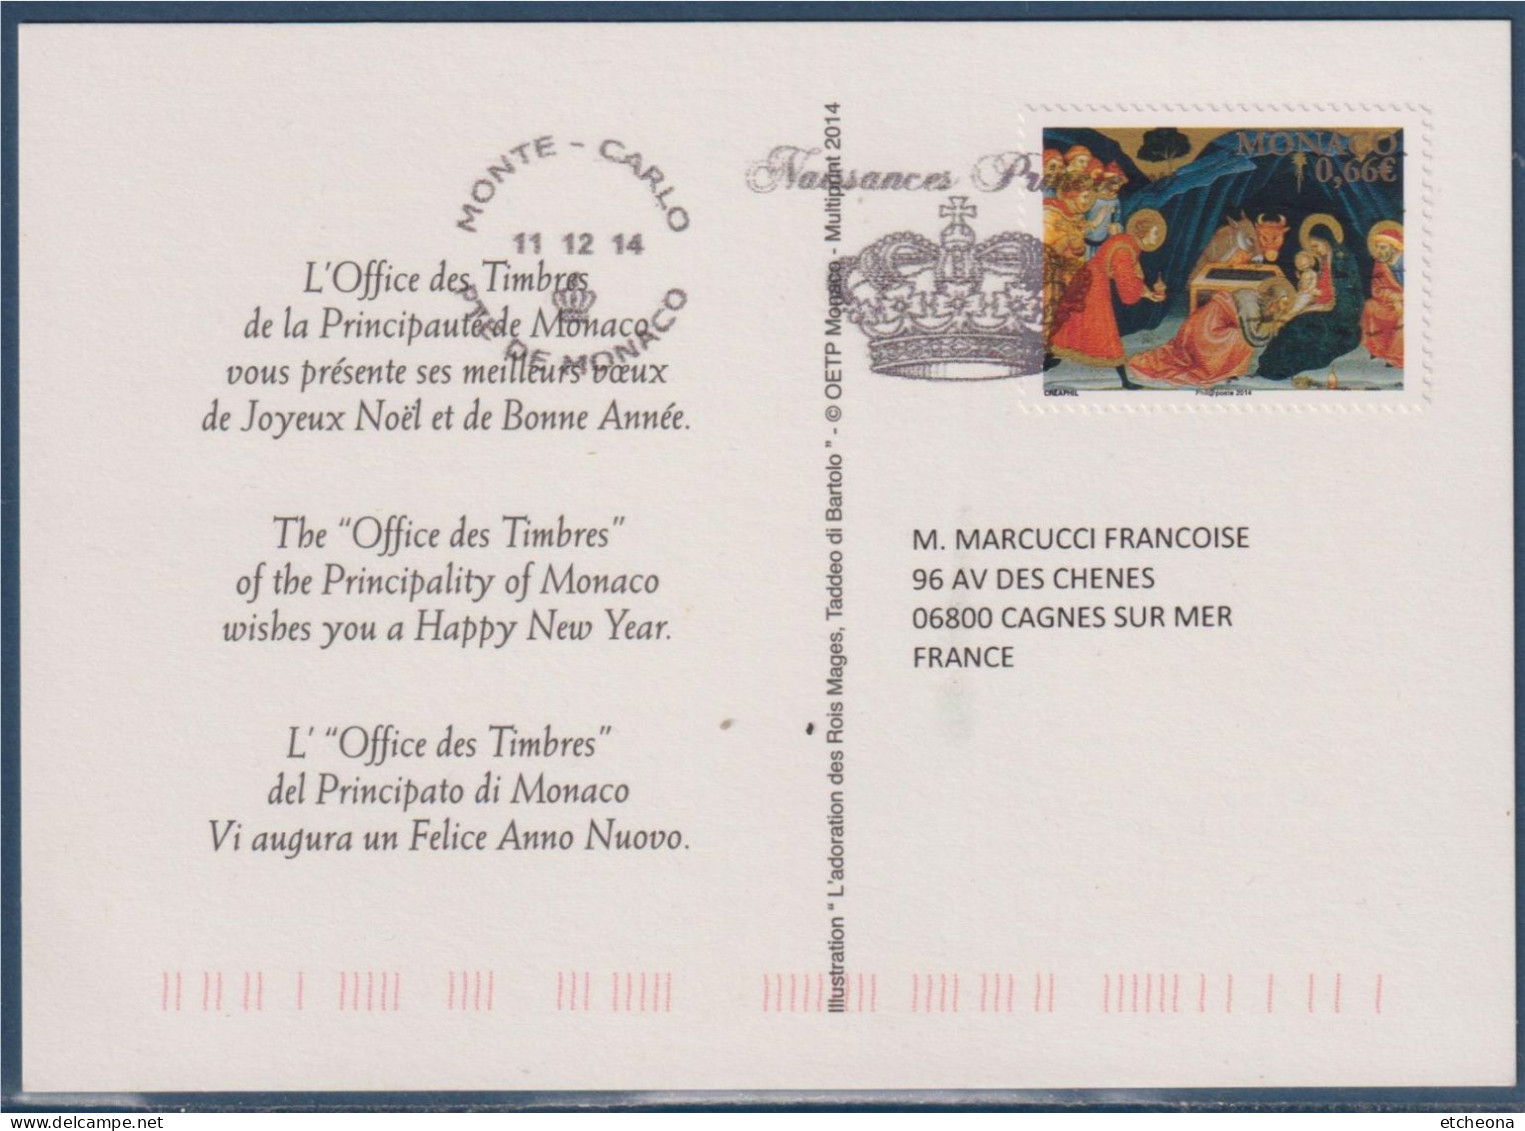 Meilleurs Vœux Flamme De Monaco Naissance Princière 11.12.14 Reprise Visuel Du Timbre N°2947 Adoration Des Mages - Postmarks